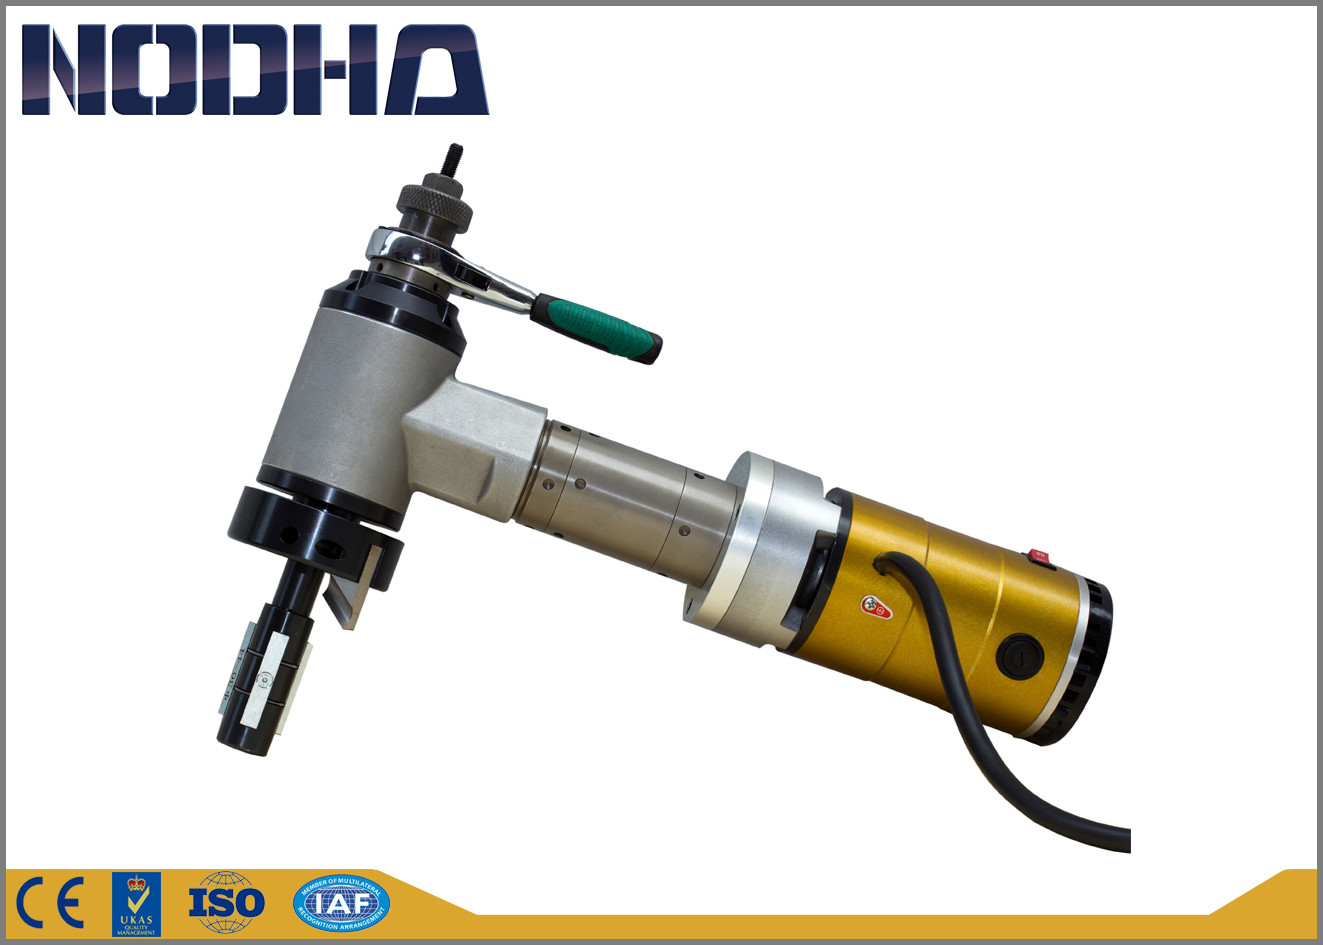 Identification - Marque taillante conduite électrique montée de la machine NODHA d'embout de tuyau